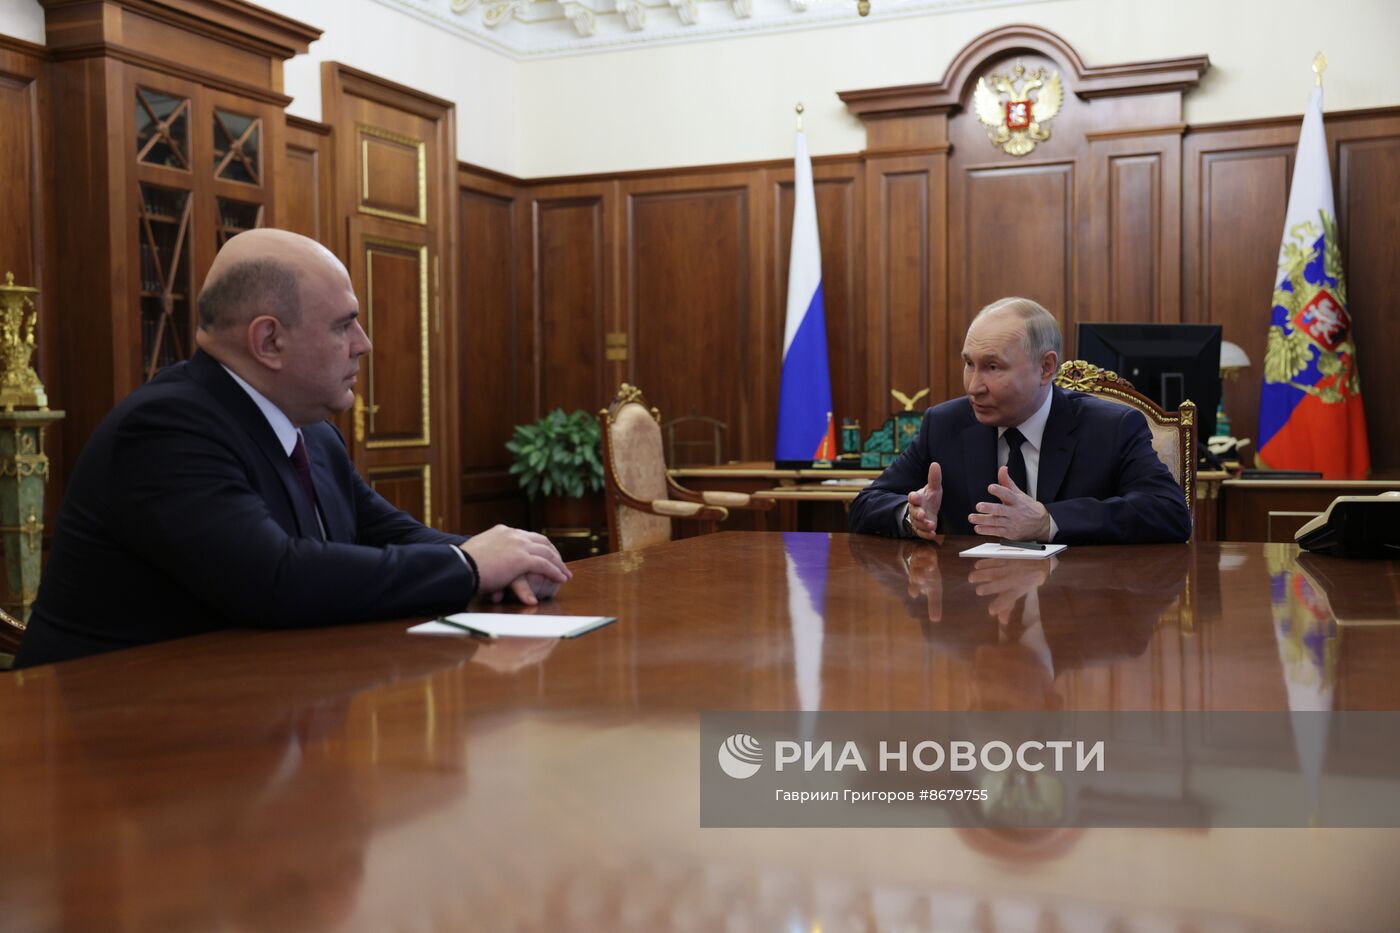 Президент Владимир Путин провел встречу с кандидатом на пост премьер-министра РФ Михаилом Мишустиным